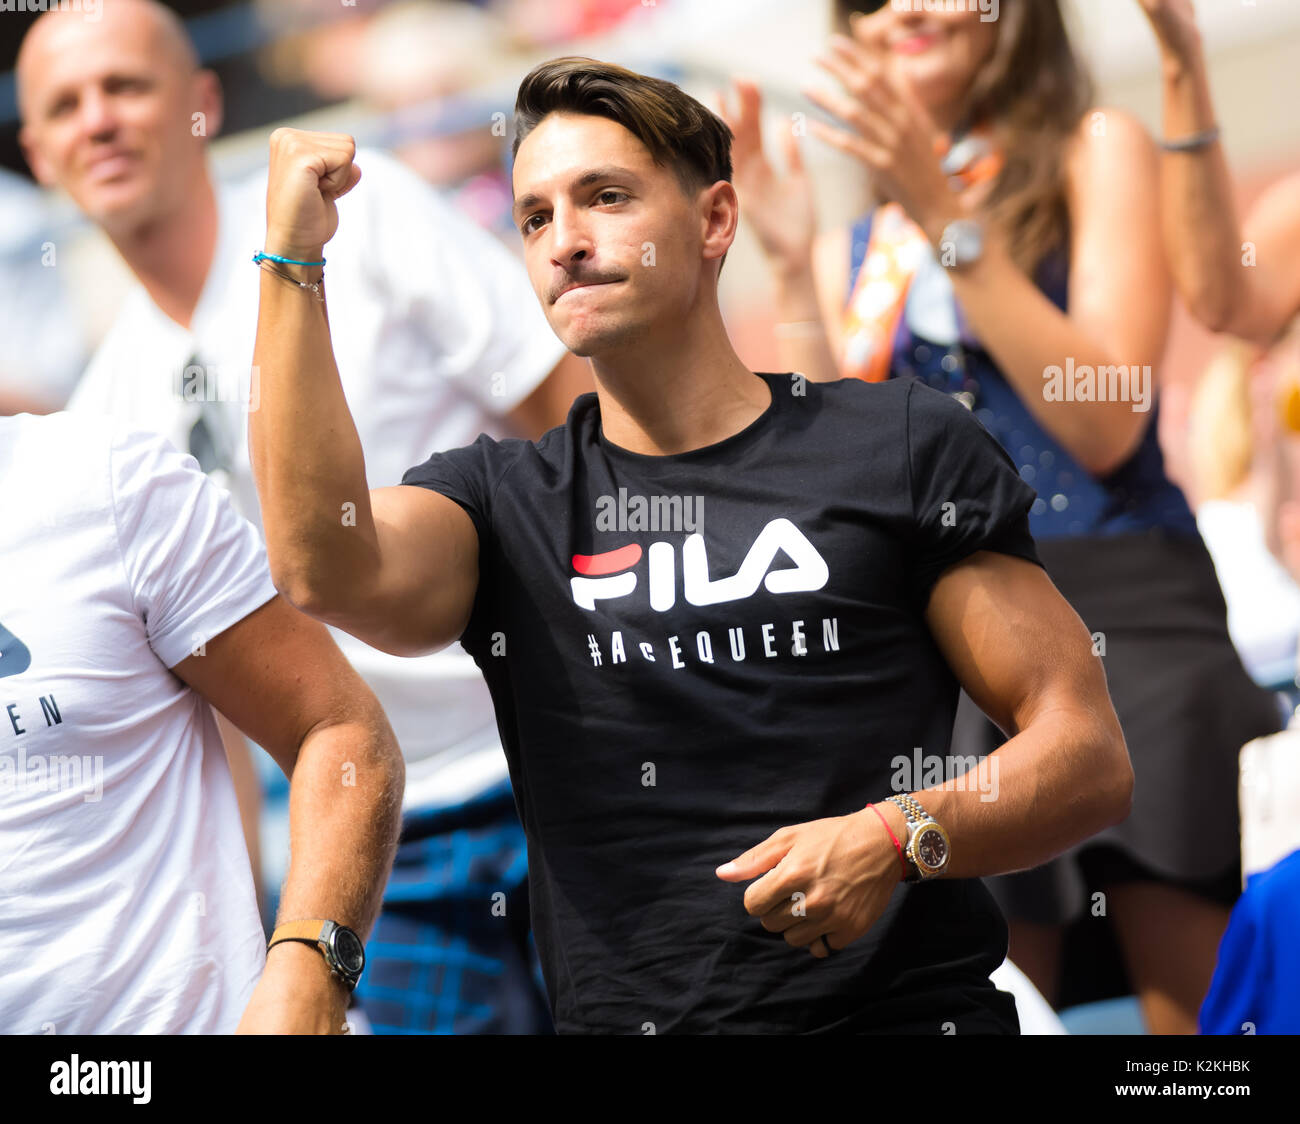 La città di New York, Stati Uniti. Il 31 agosto, 2017. Michal Hrdlicka al 2017 US Open Grand Slam Tennis Tournament © Jimmie48 Fotografia/Alamy Live News Foto Stock